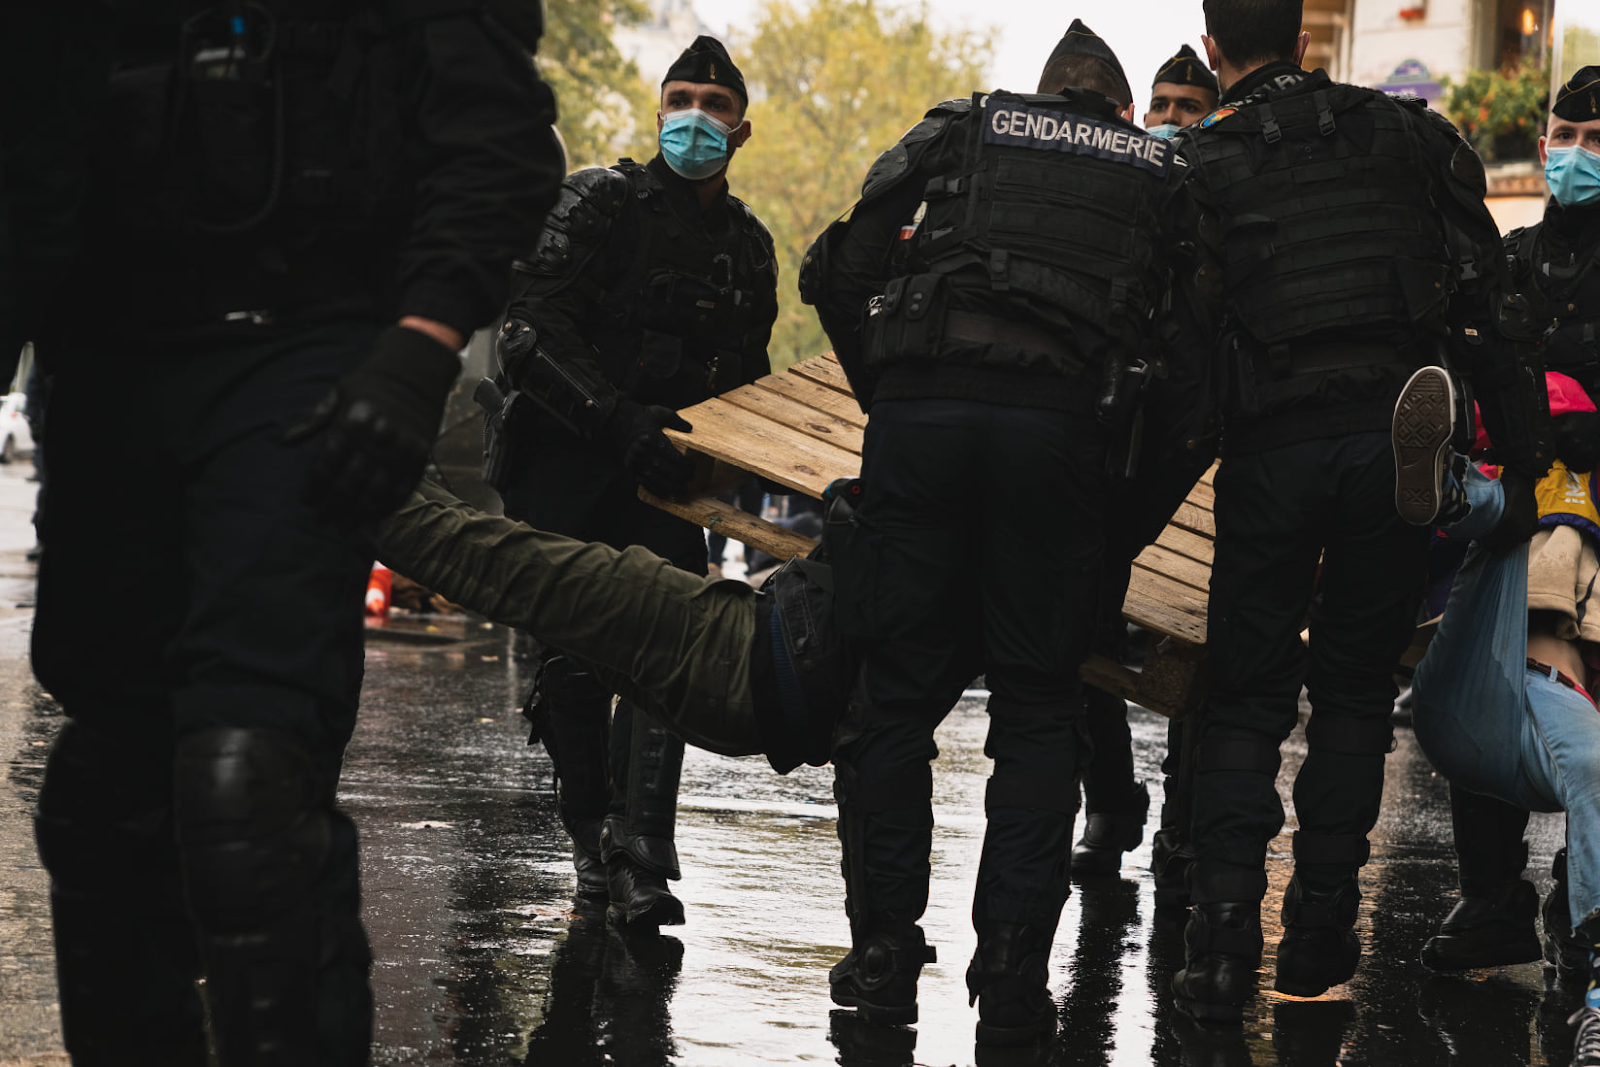 Rebeldes a “resistir violentamente” à prisão segundo a políciafrancesa.